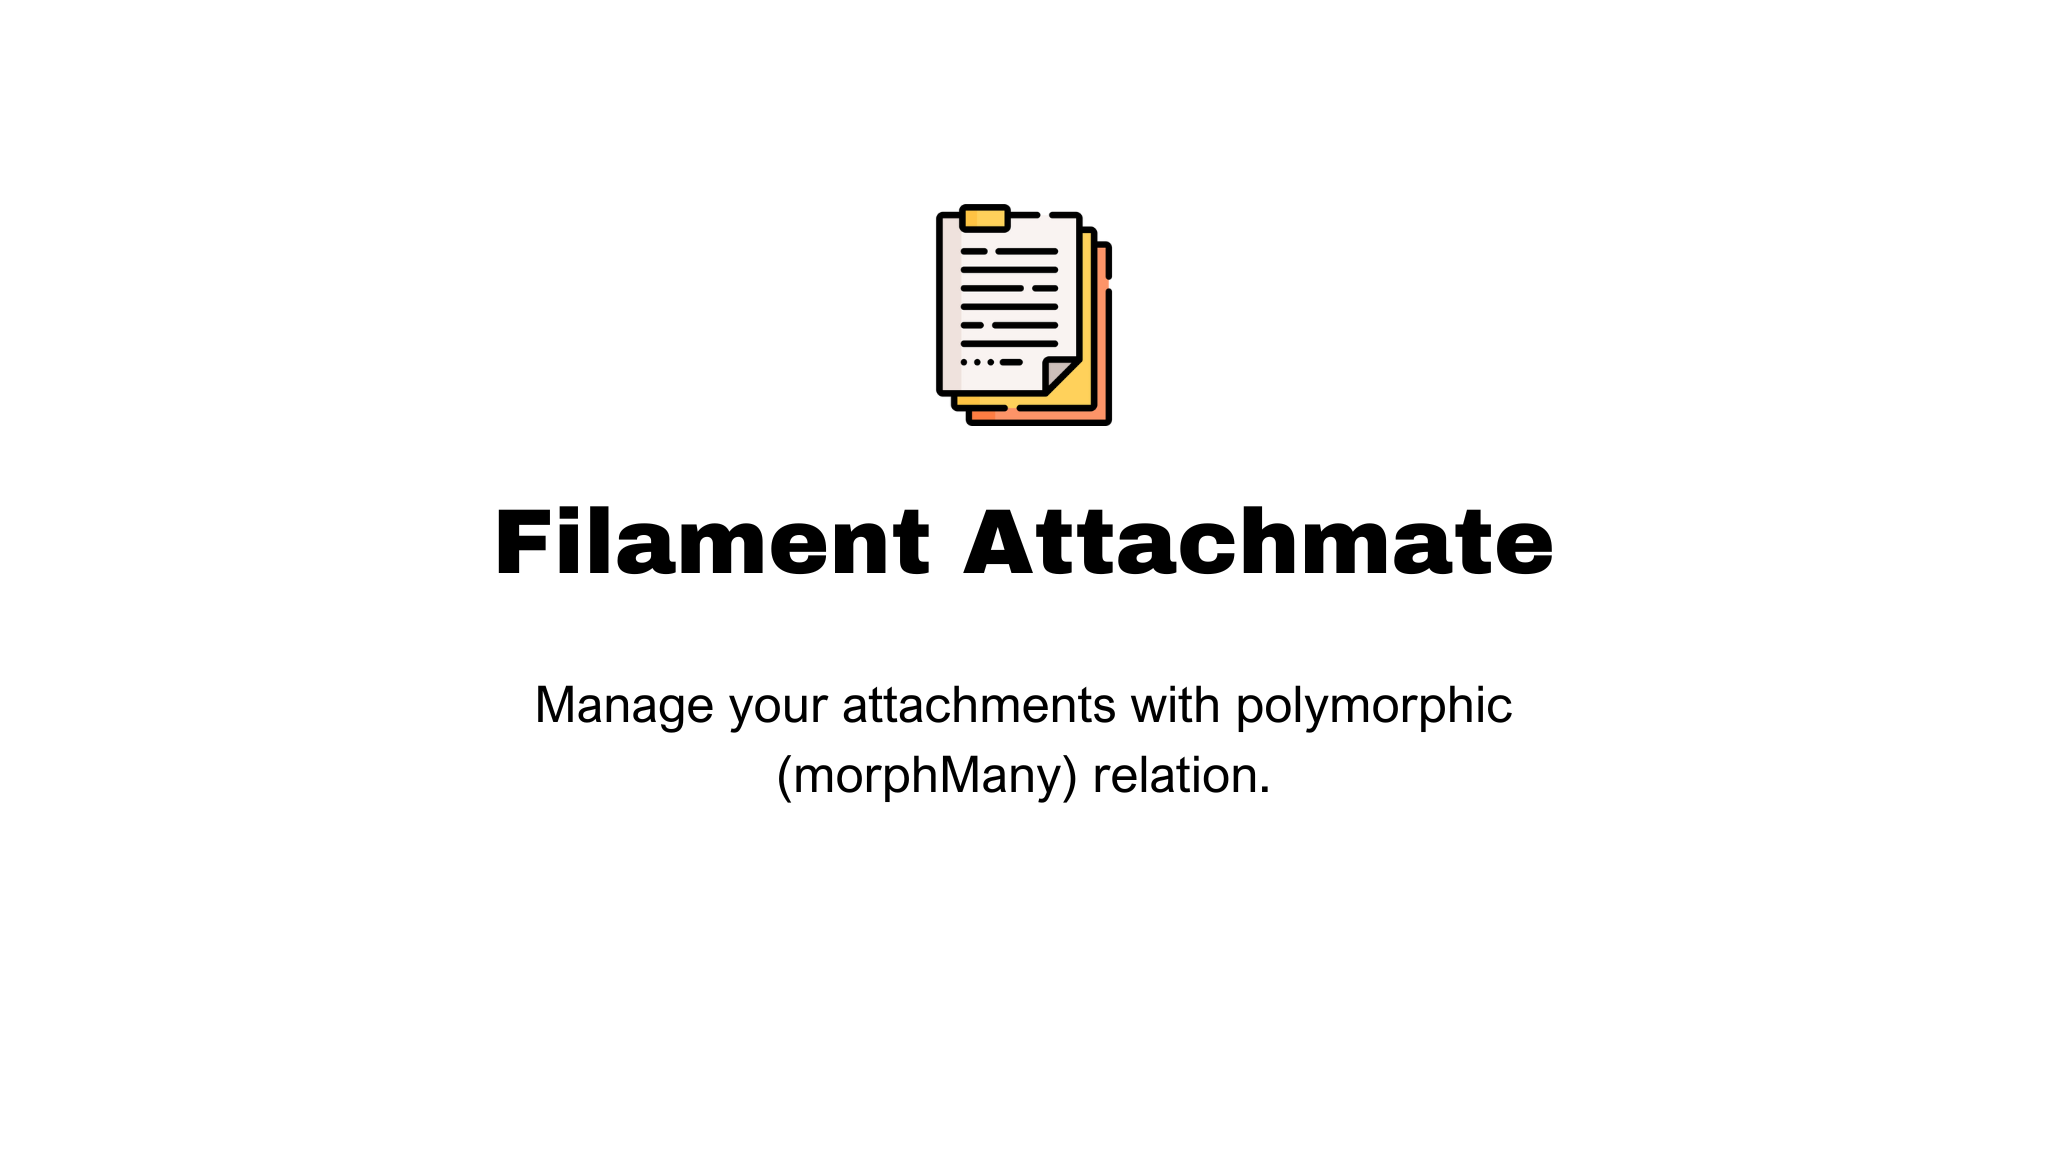 Filament Attachmate